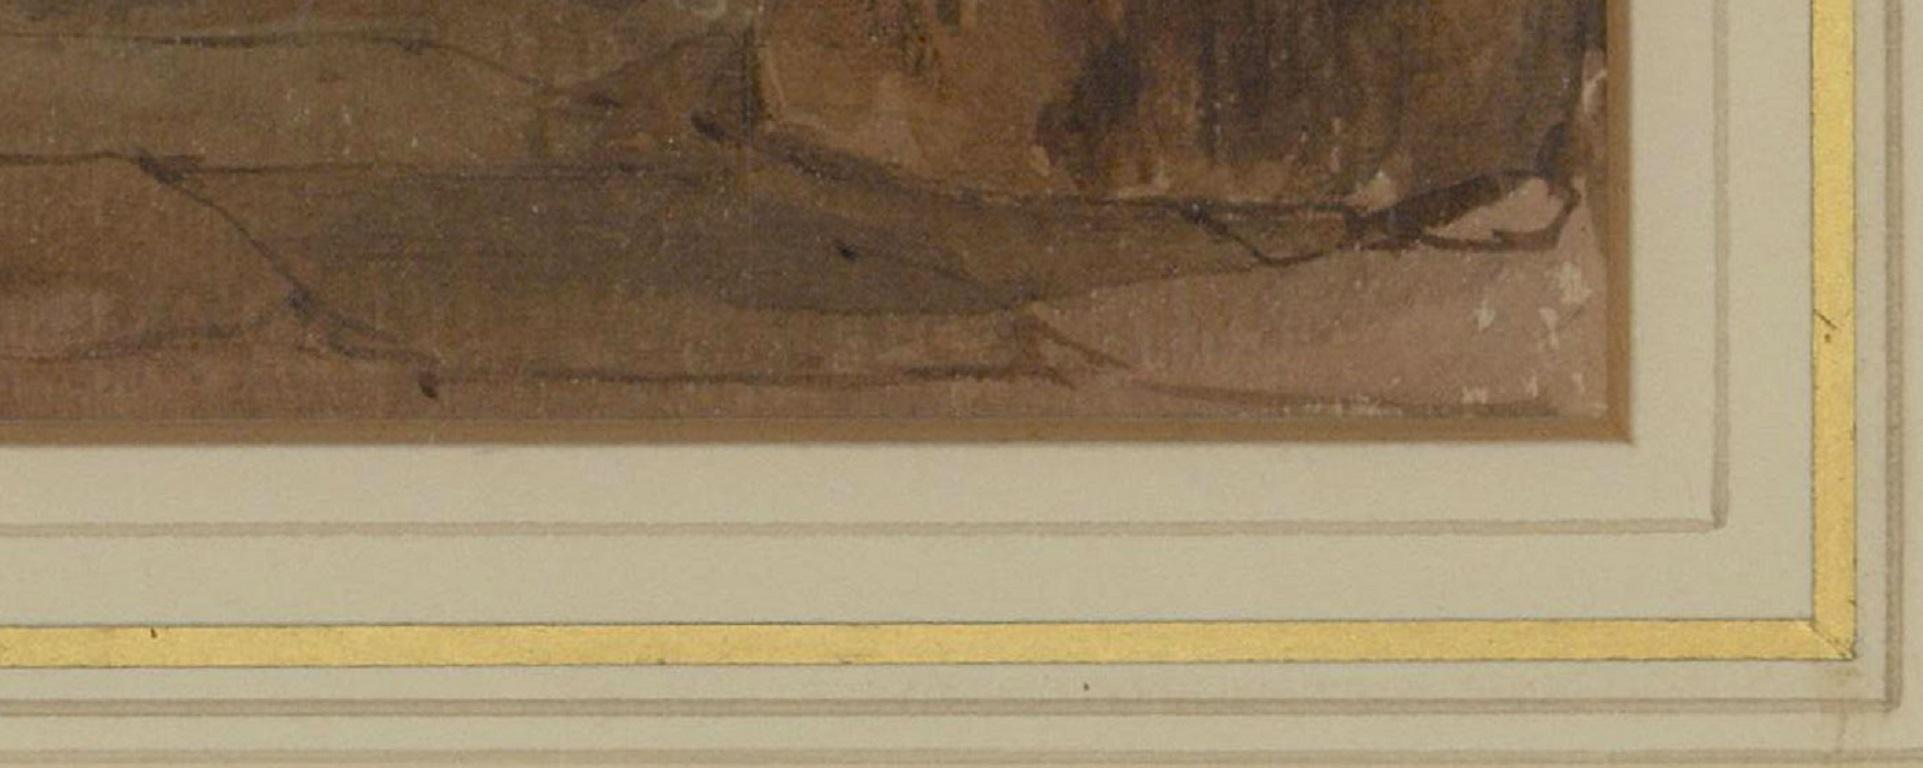 Magnifique aquarelle de la fin du XIXe siècle représentant une scène de cottage avec des personnages, réalisée par l'artiste anglais Edward Angelo Goodall (1819-1908). Cette composition rappelle les scènes d'intérieur hollandaises, avec son